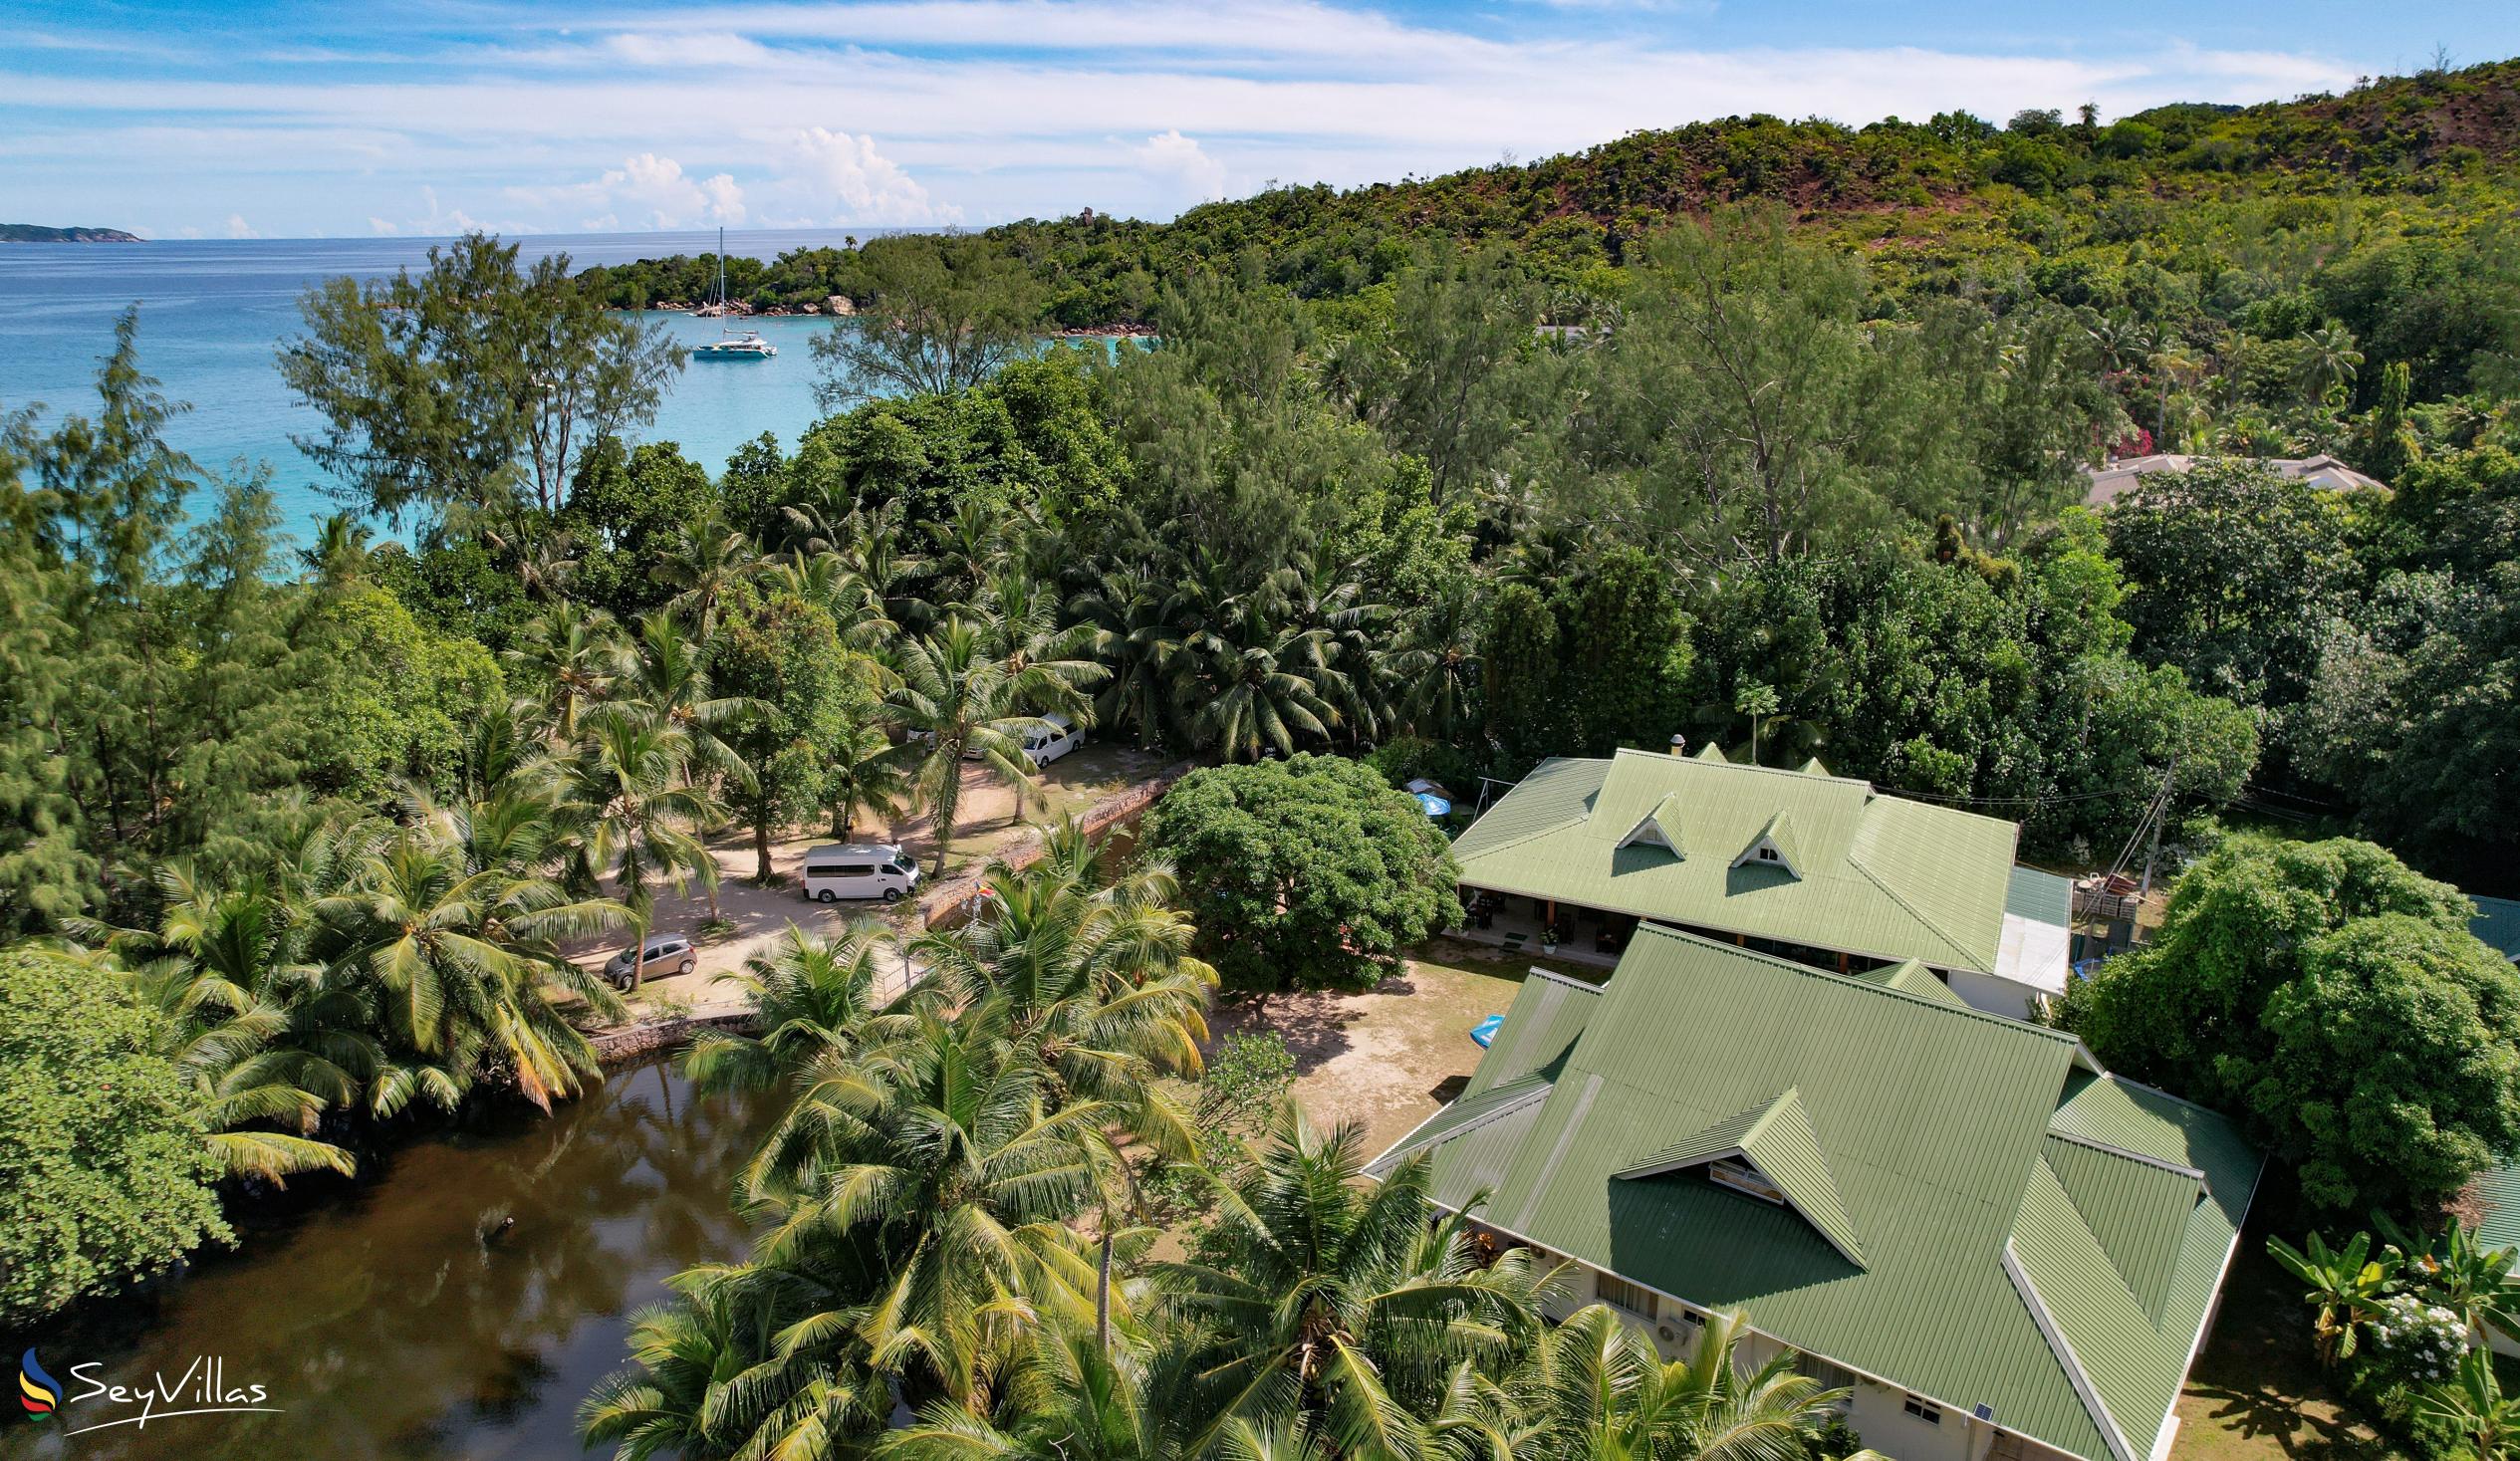 Foto 3: Le Chevalier Bay Guesthouse - Aussenbereich - Praslin (Seychellen)